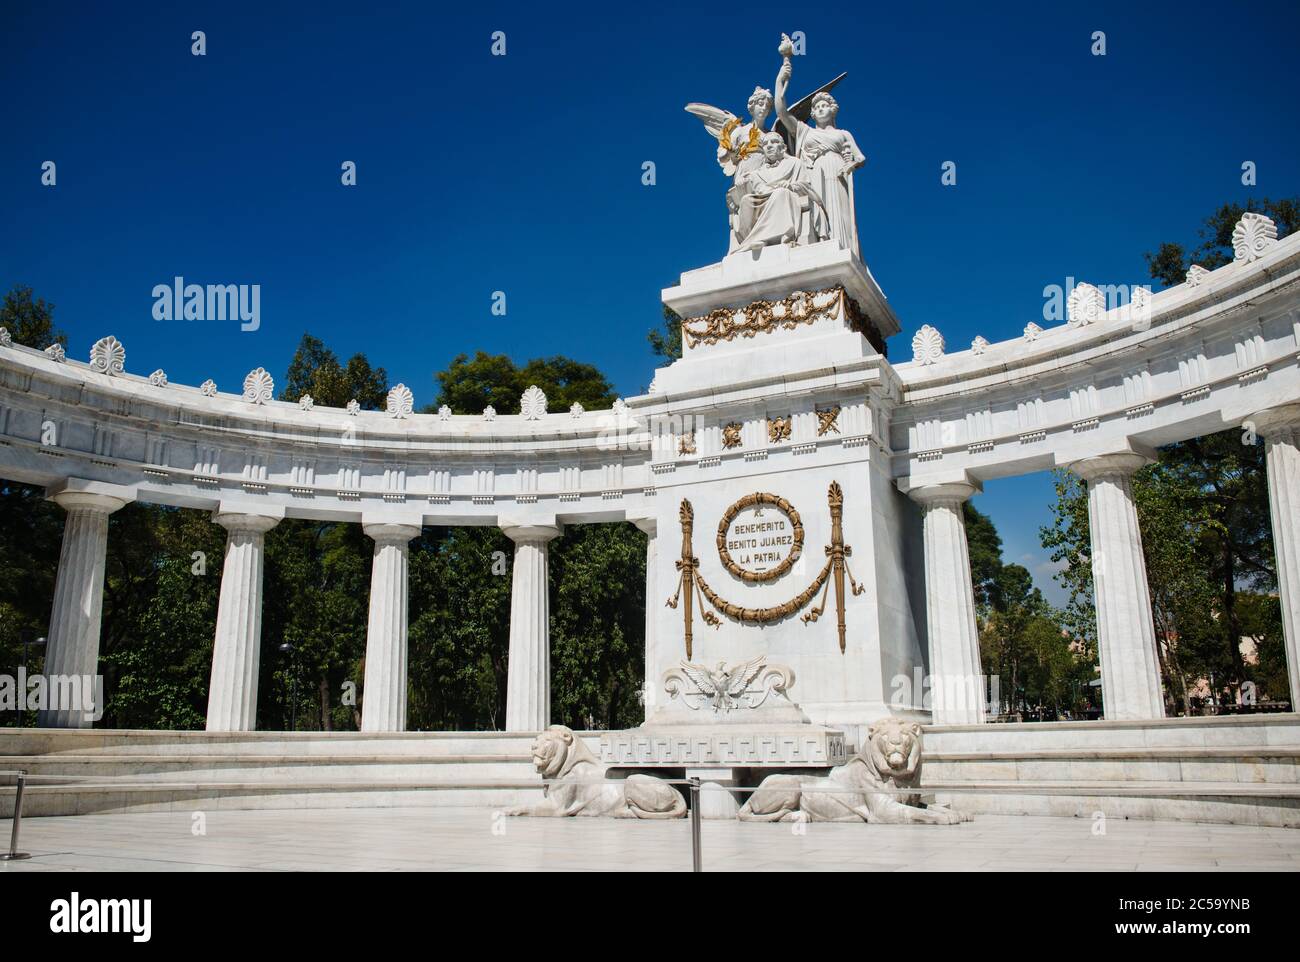 Monument devant la colonnade, Hemicillo a Benito Juarez, Mexico, Mexique Banque D'Images